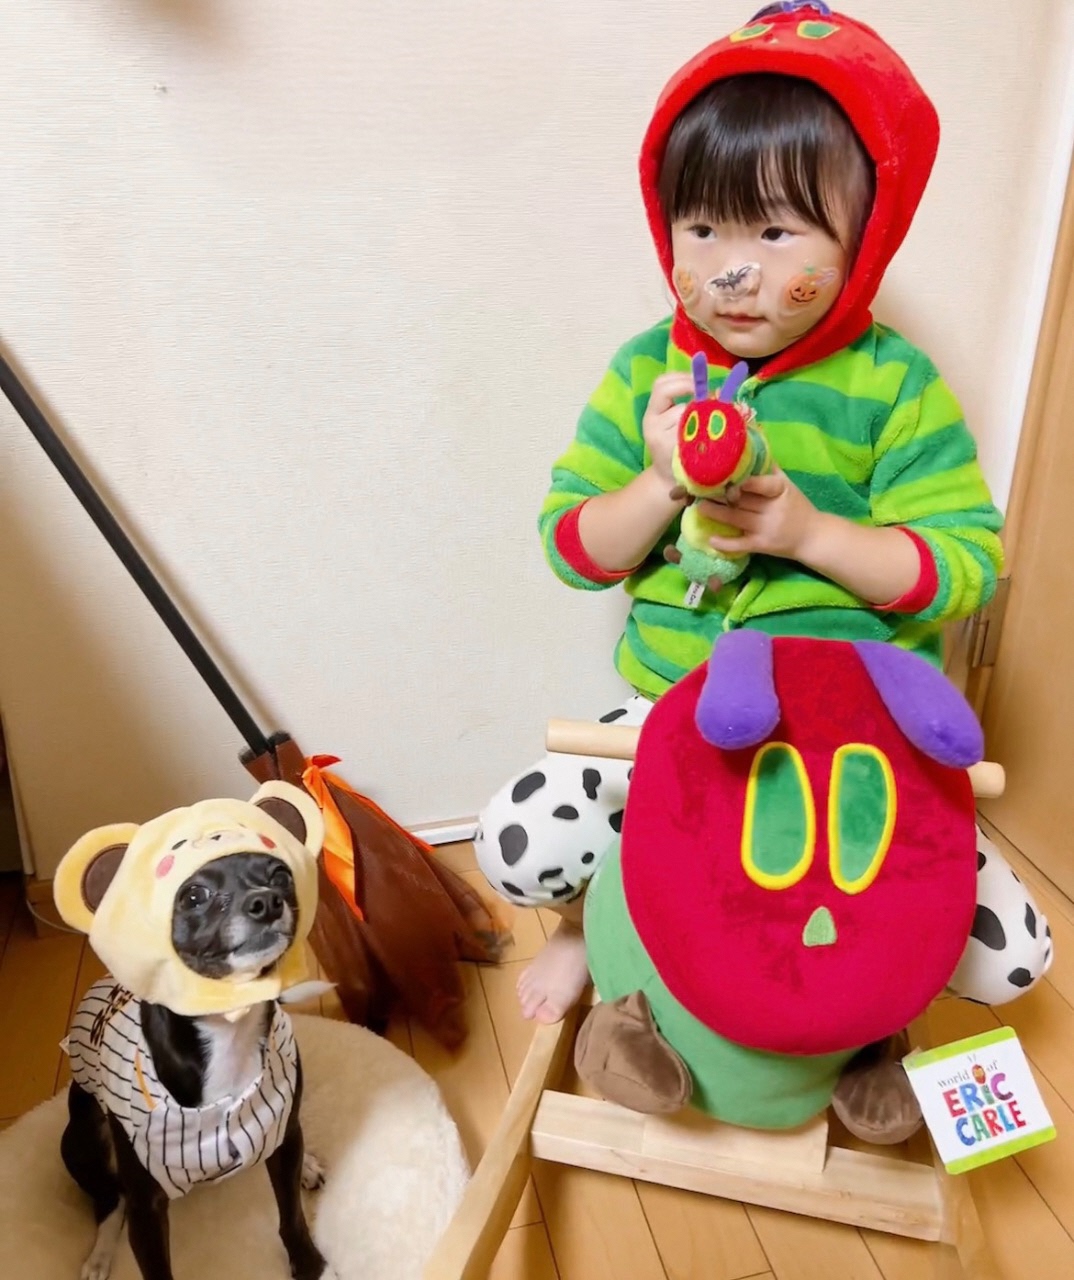 被り物を被っている犬とキャラクターの格好をして木馬に乗っているお子さんの写真